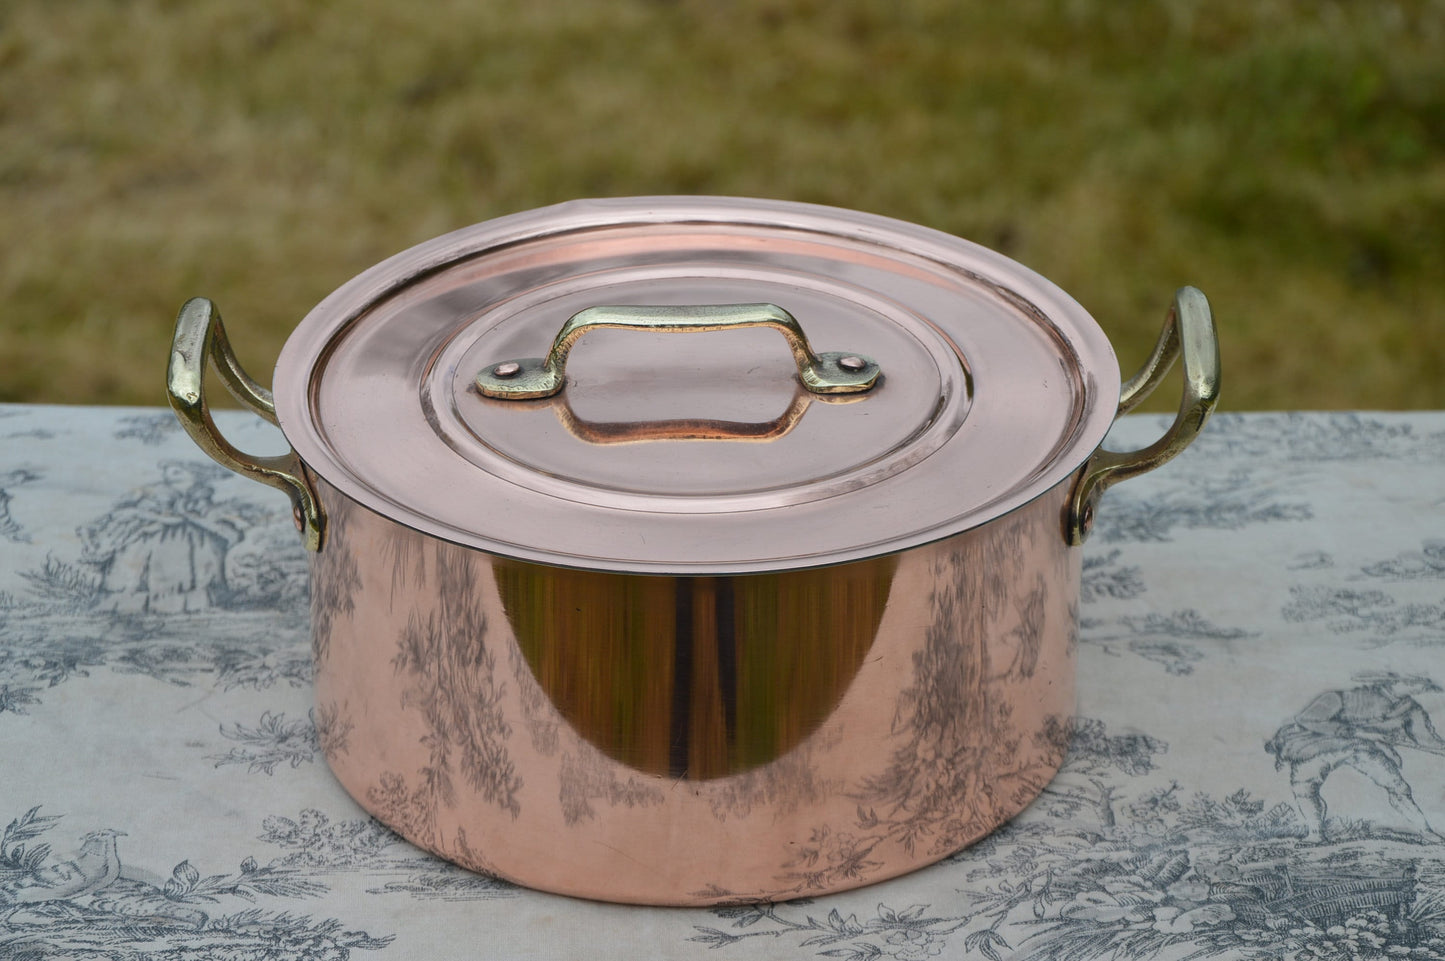 Metaux Ouvres Vesoul 1mm Copper Casserole Faitout Oval Pot French Dutch Oven Lid 1mm 20cm 8"  Good Solid Vintage Copper Pan